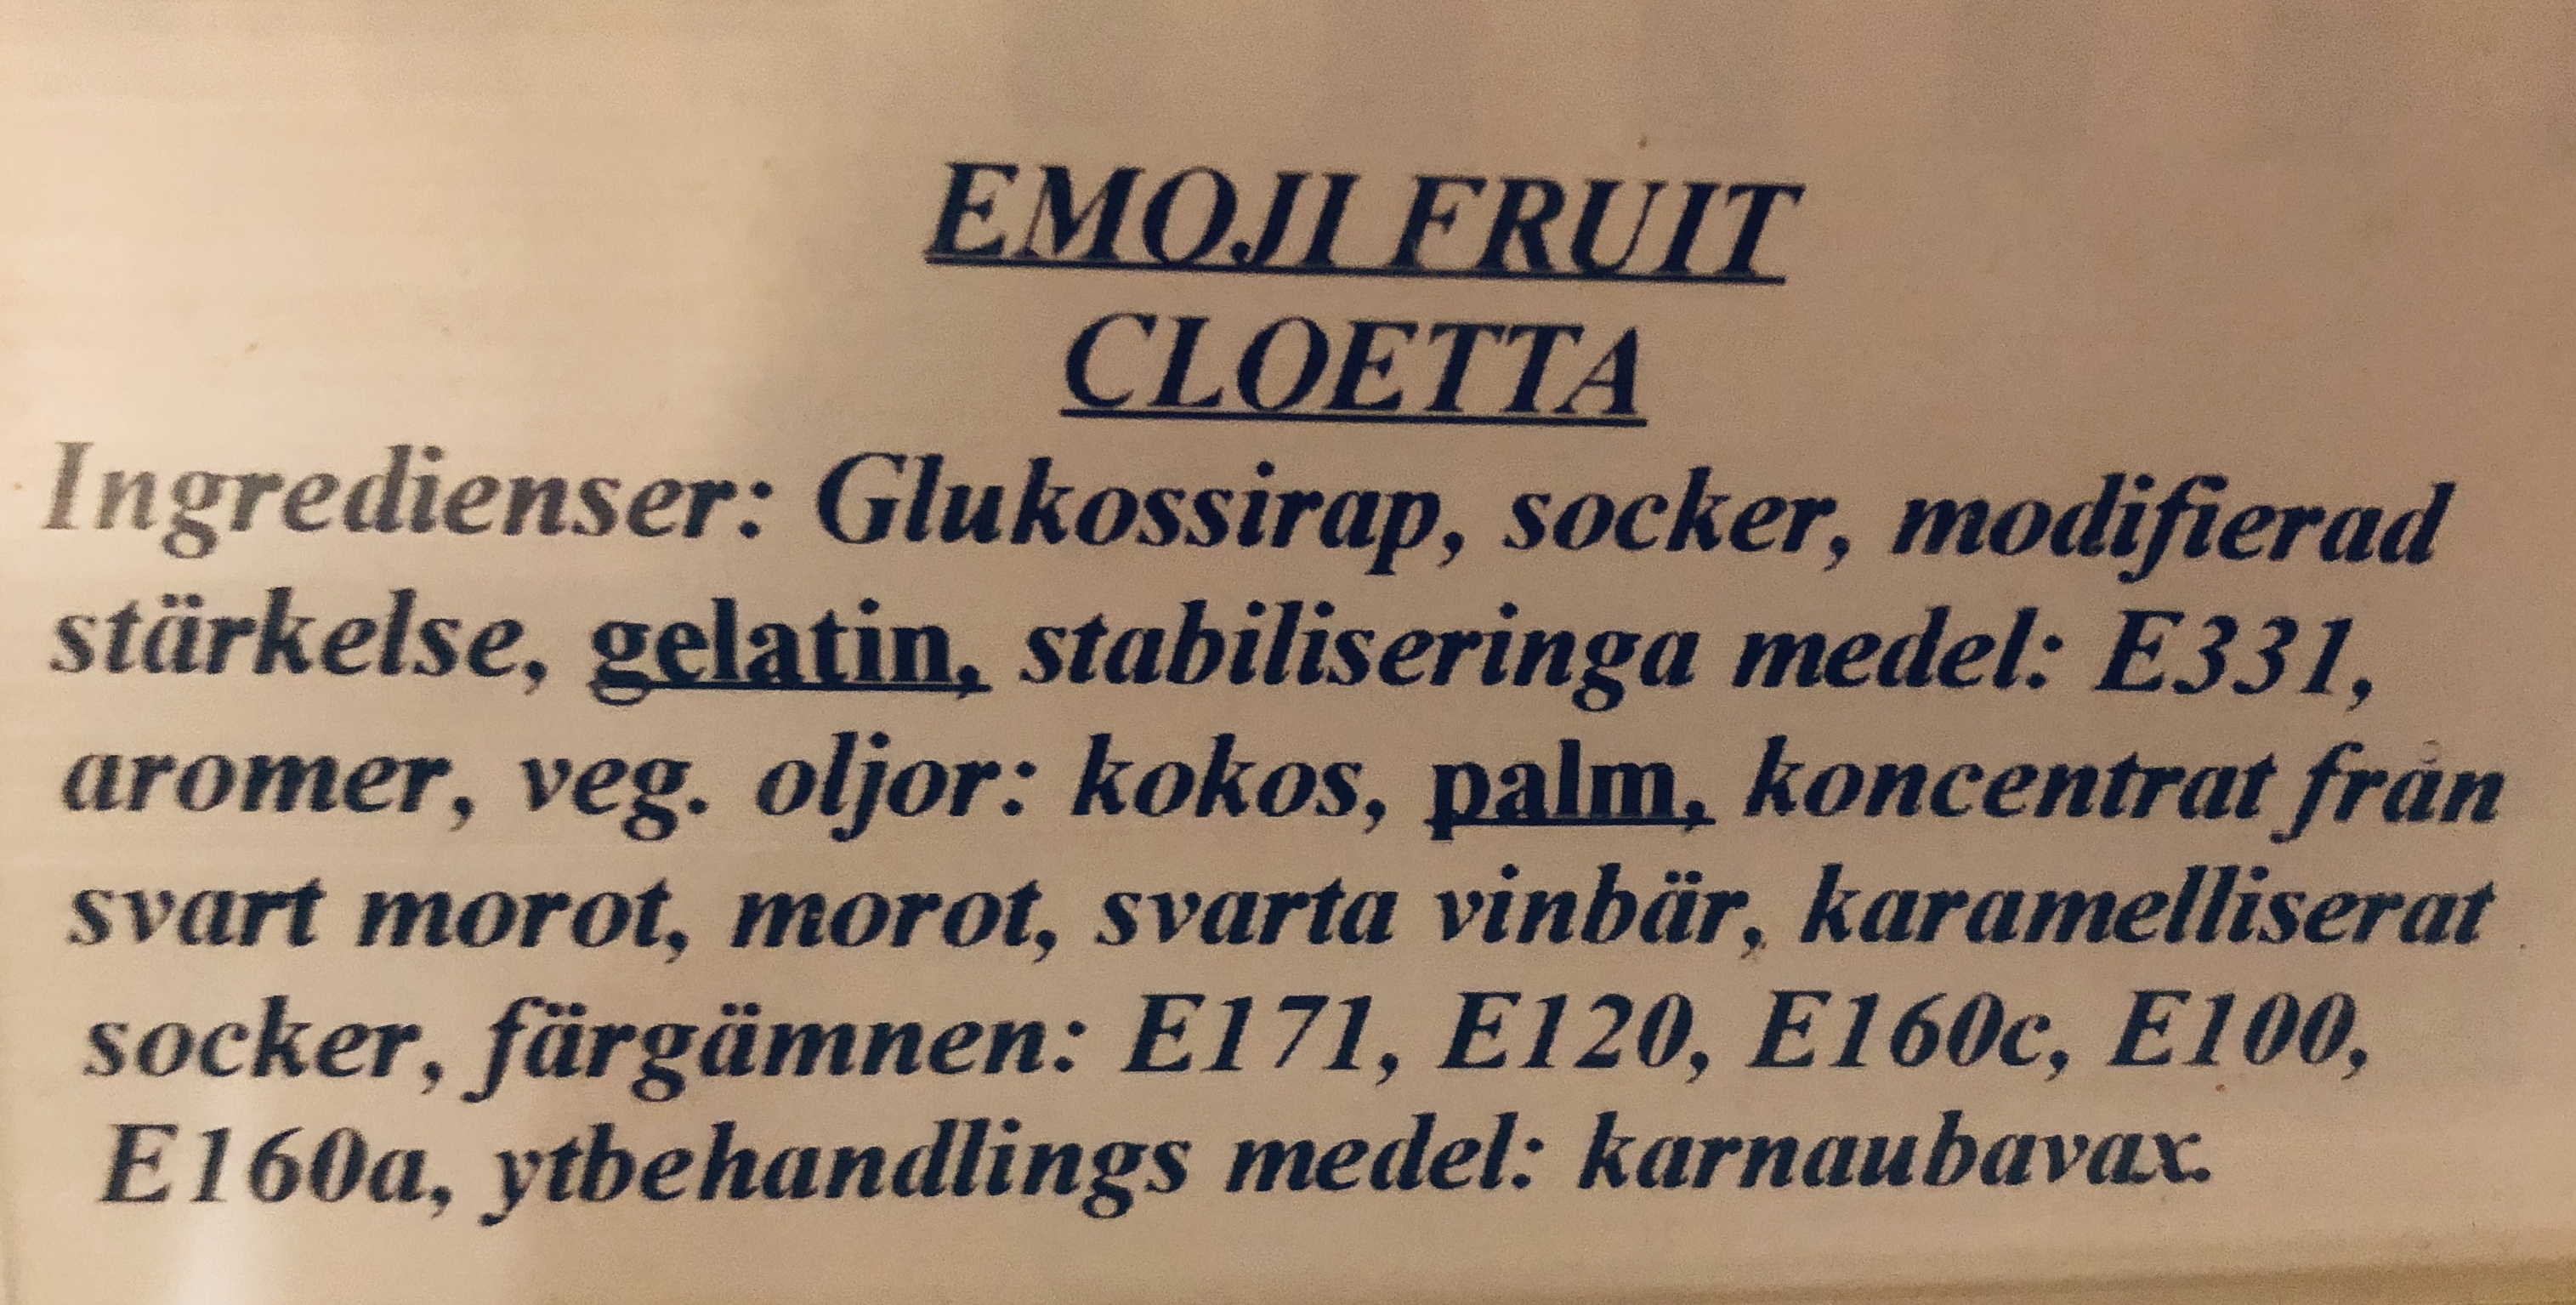 Emoji fruit